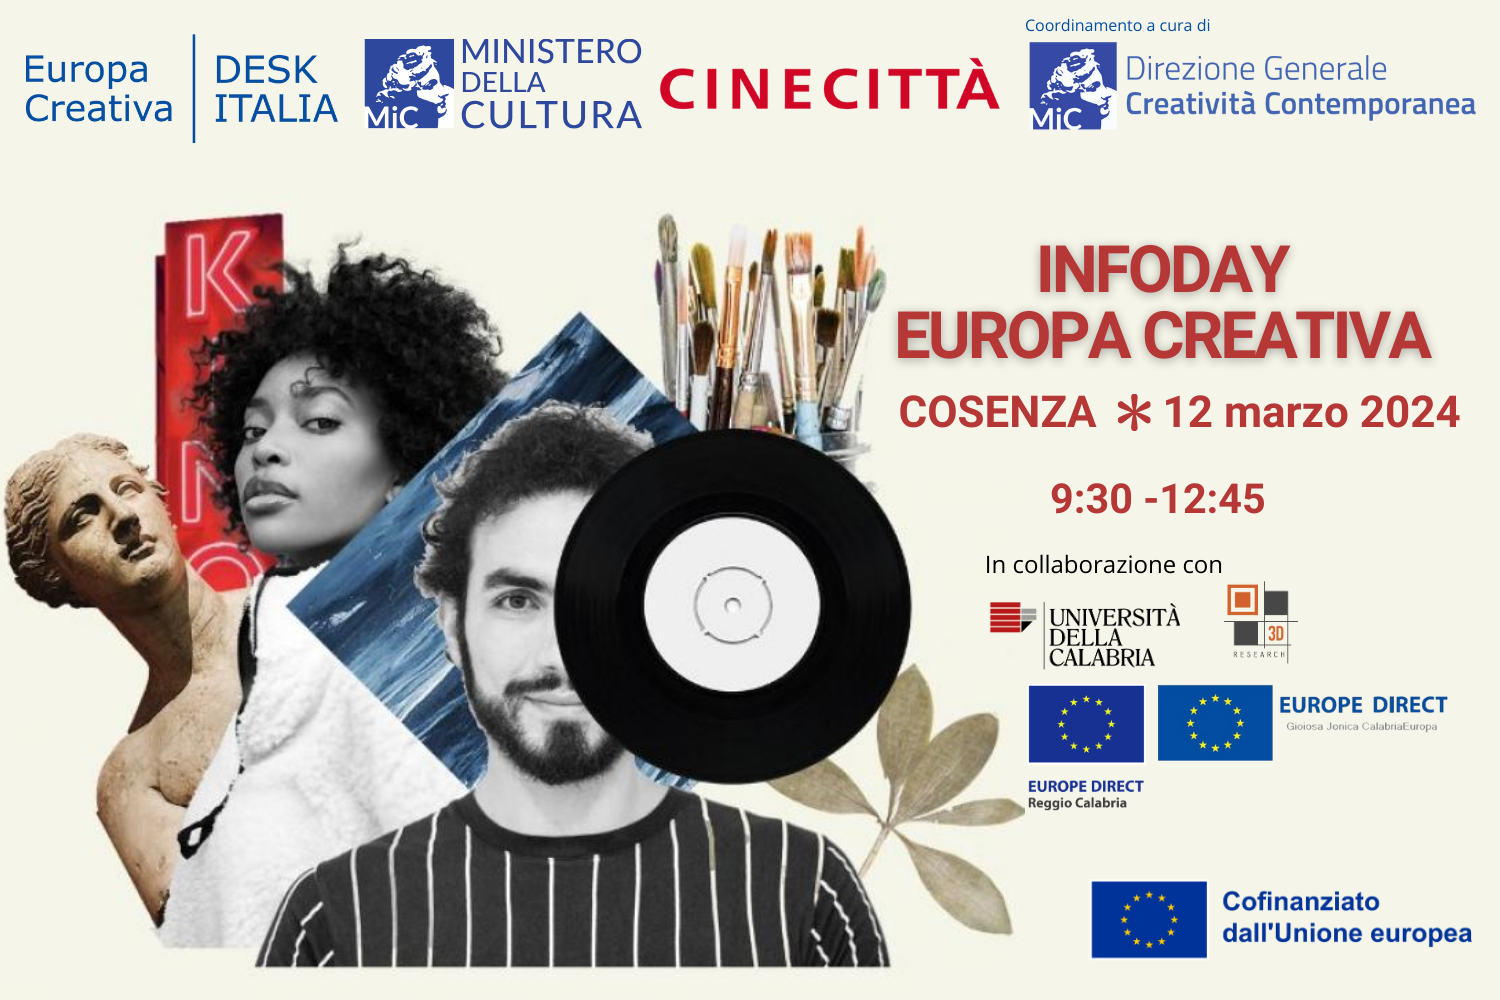 3D Research presente all’Infoday Europa Creativa, presso l’Università della Calabria